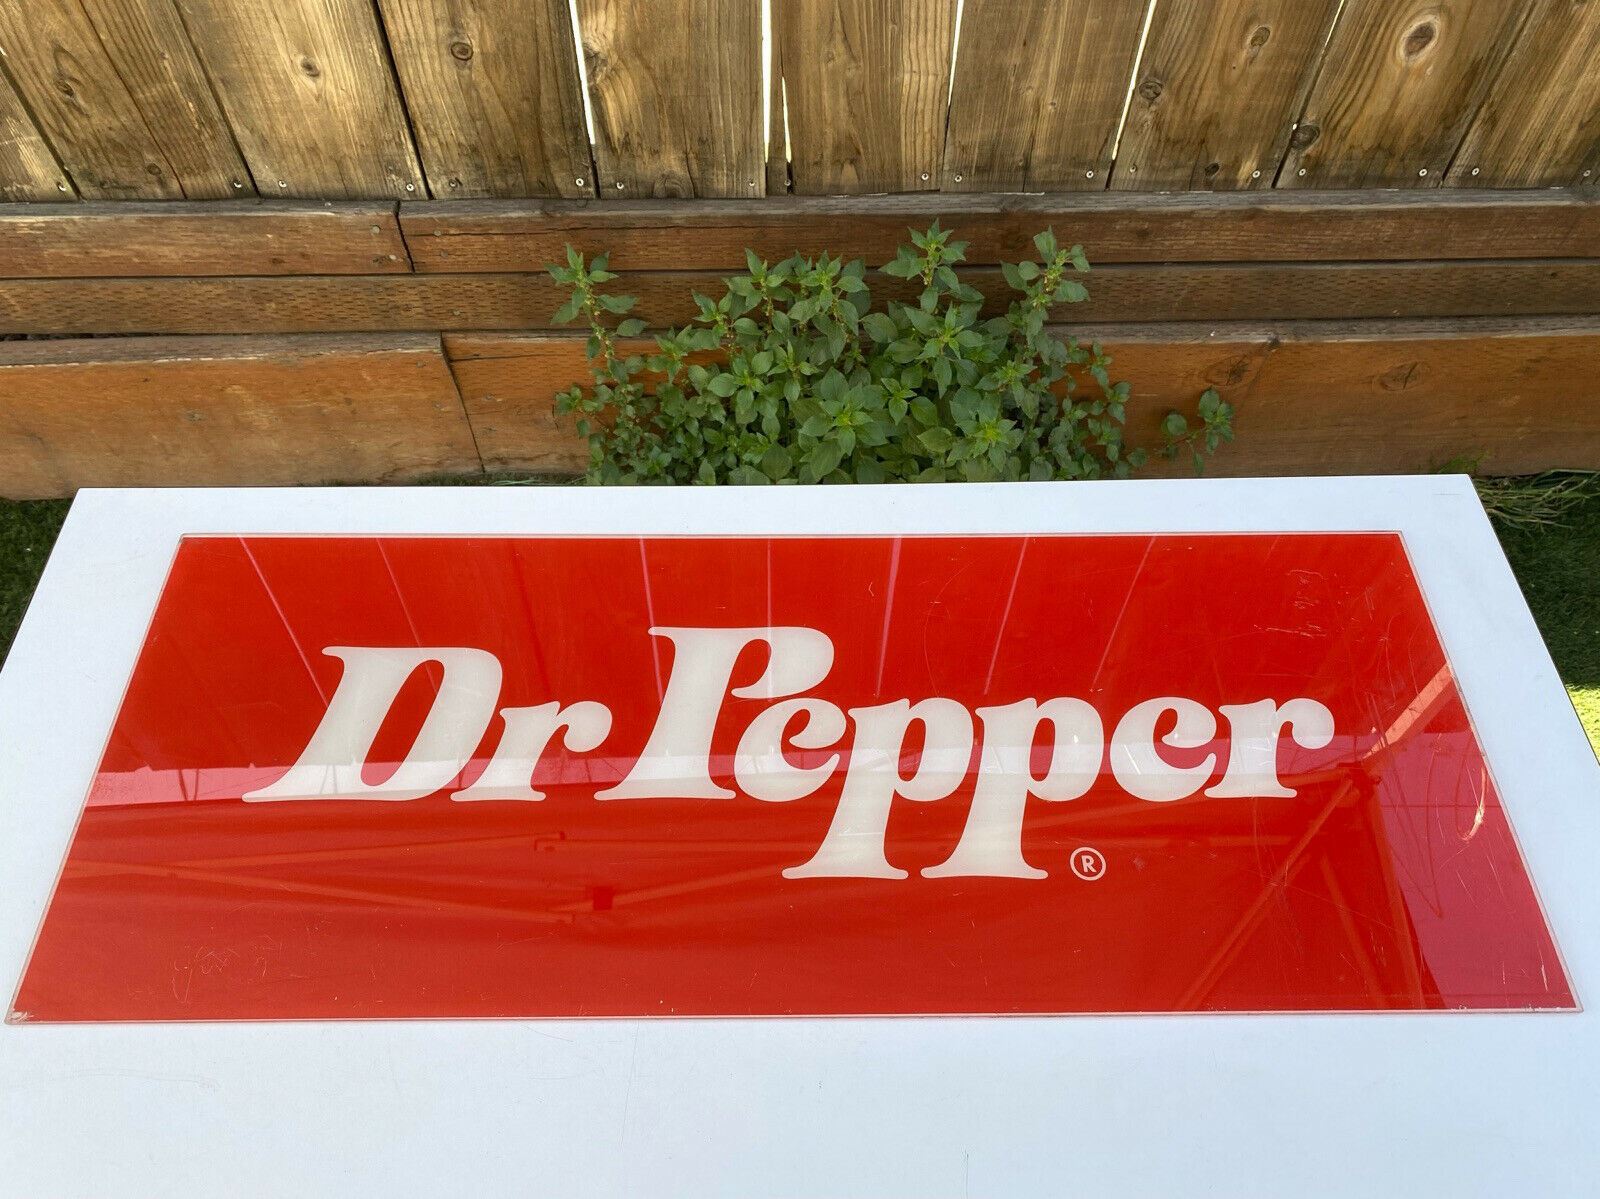 vintage dr pepper logo